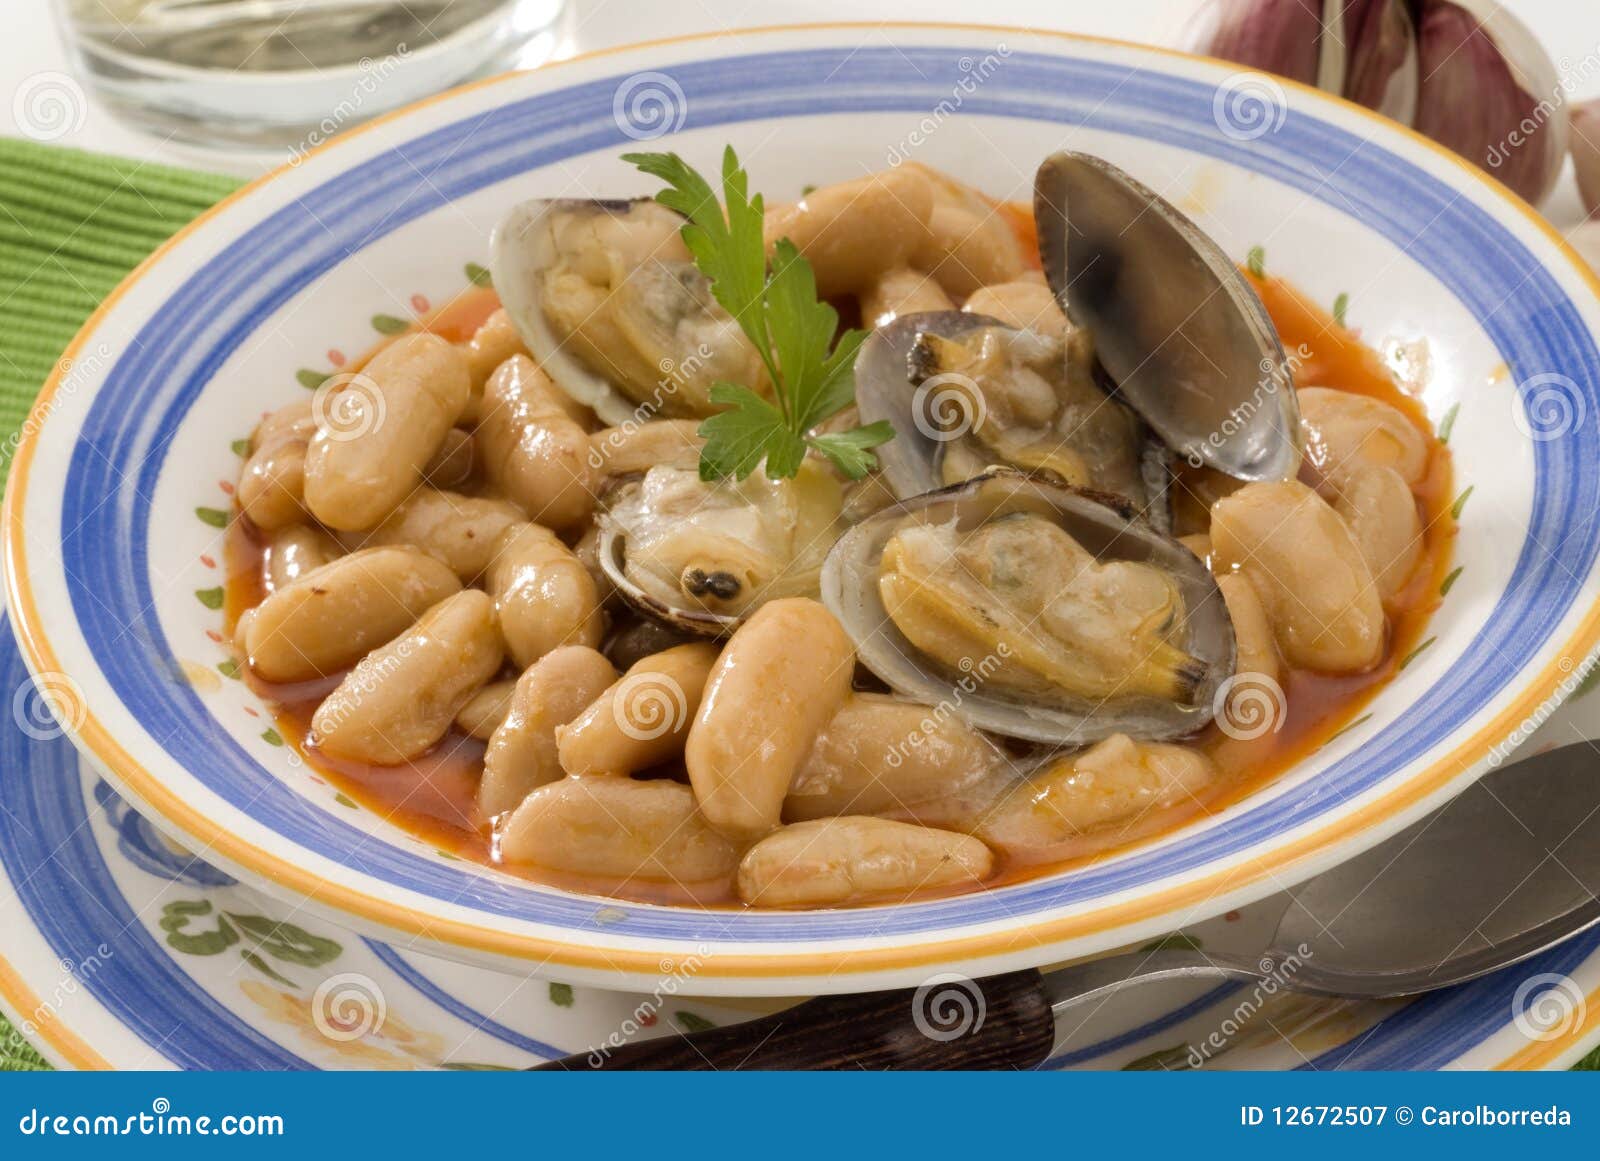 spanish cuisine. asturian clams and beans.